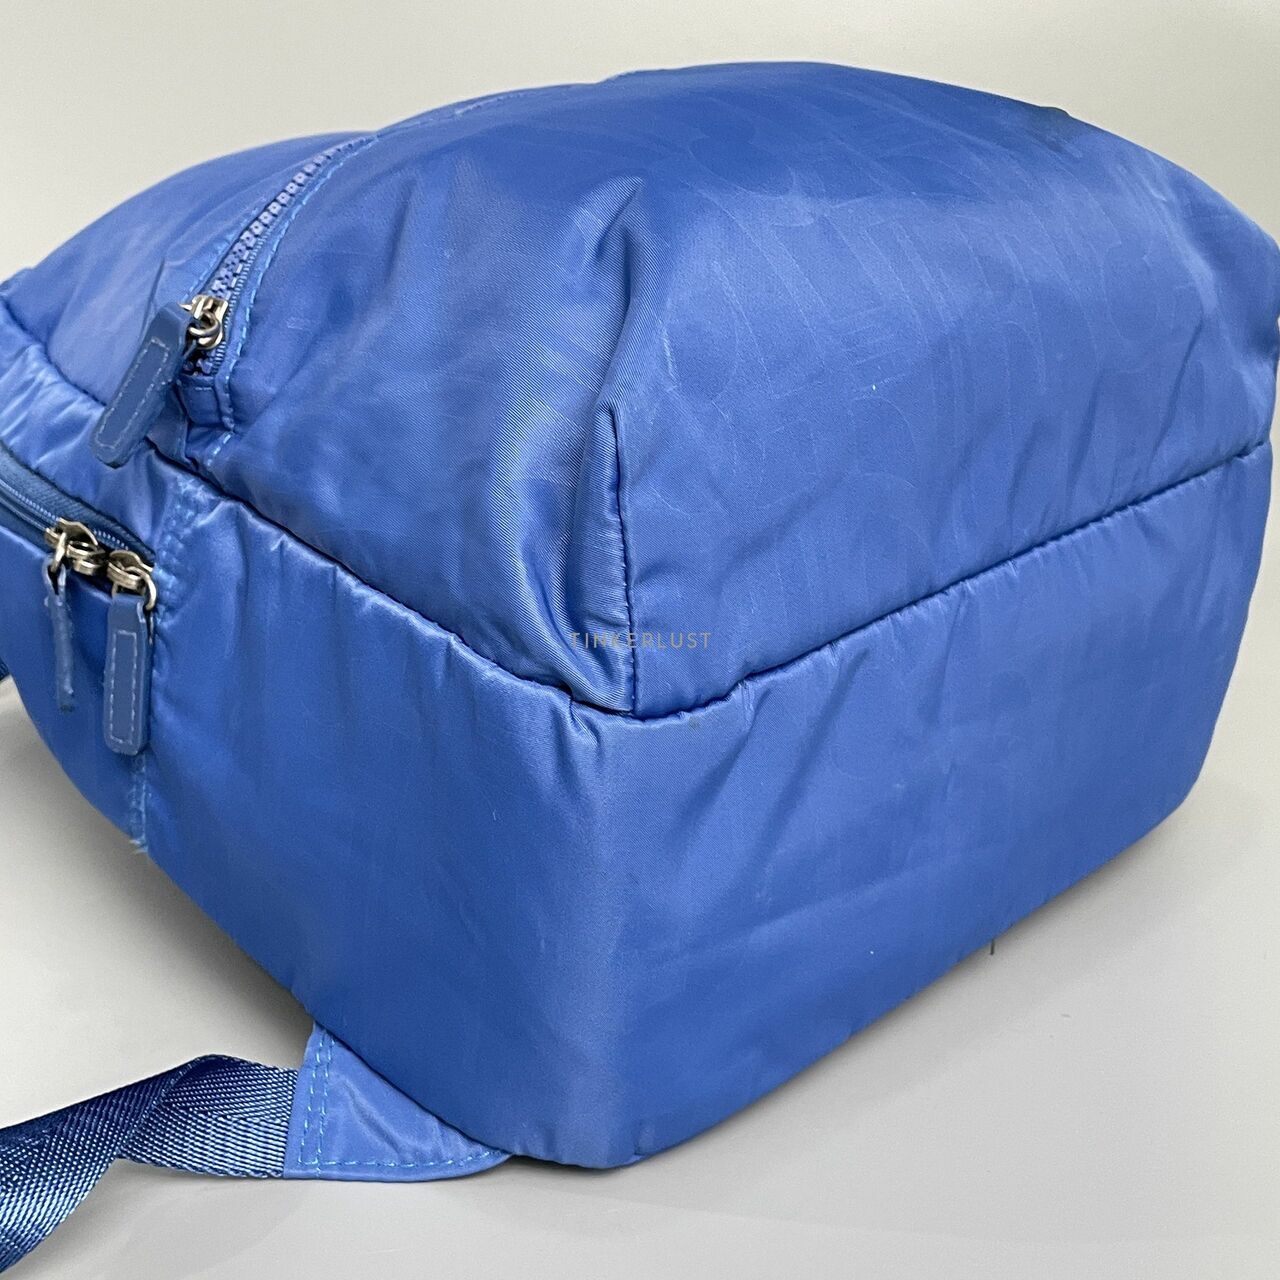 Elle Blue Backpack